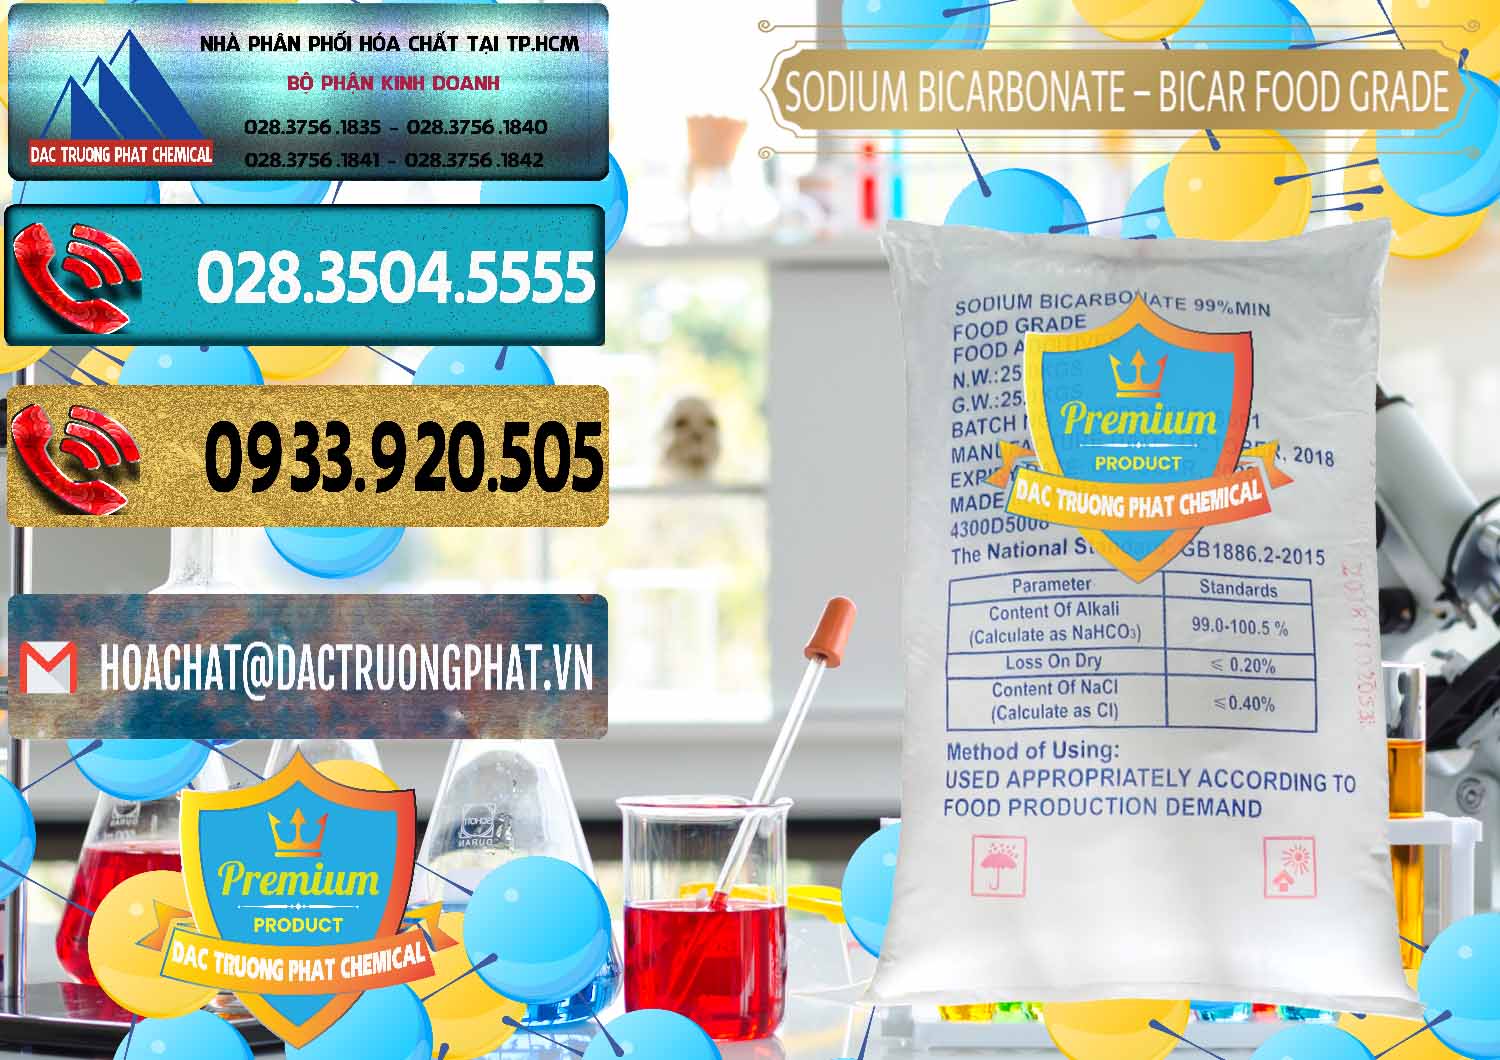 Bán _ phân phối Sodium Bicarbonate – Bicar NaHCO3 Food Grade Trung Quốc China - 0138 - Cty chuyên cung cấp ( nhập khẩu ) hóa chất tại TP.HCM - hoachatdetnhuom.com